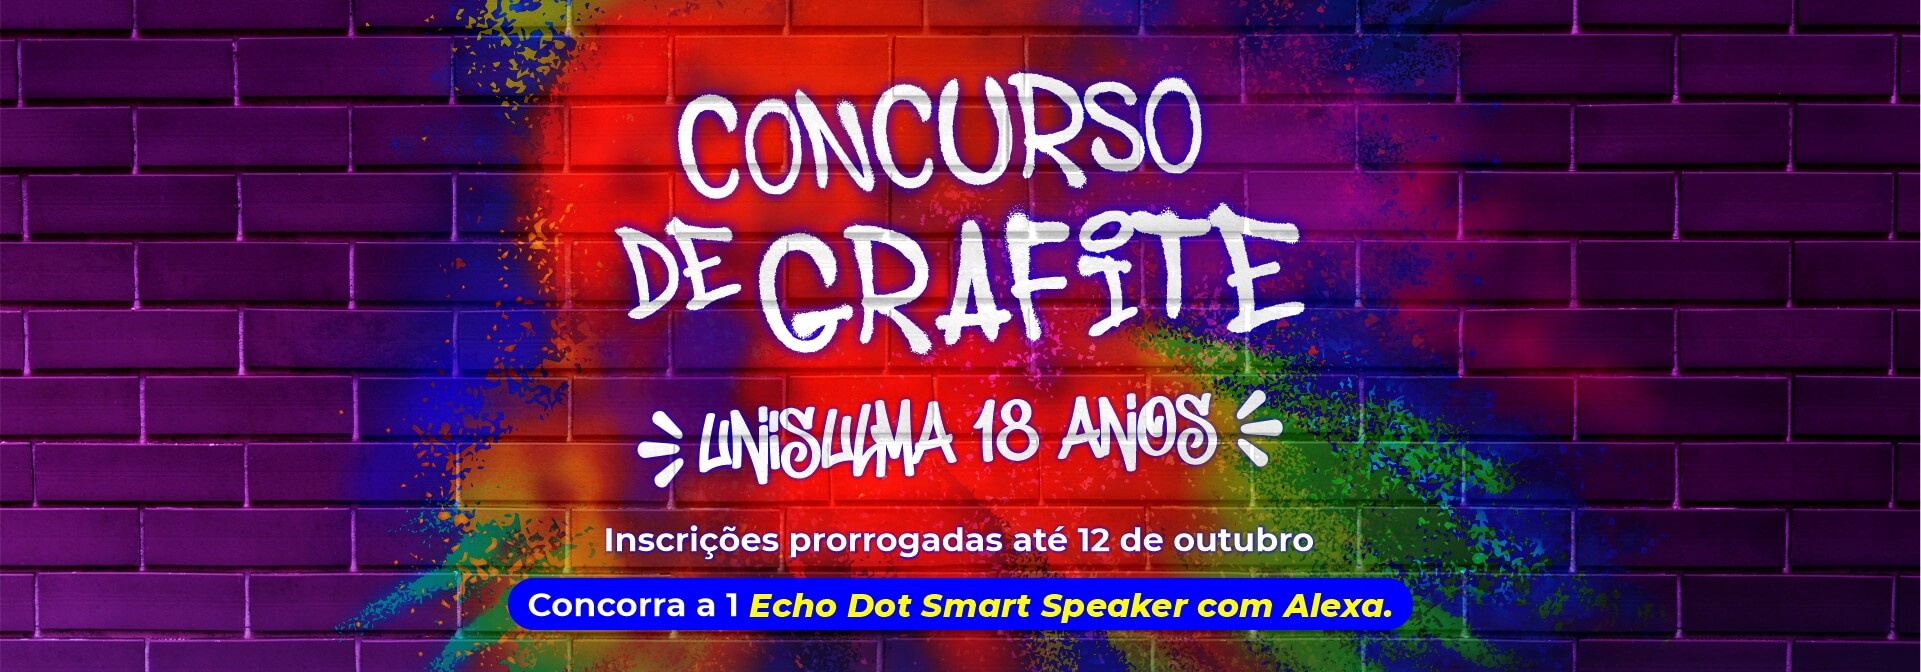 CONCURSO DE GRAFITE banner prorr